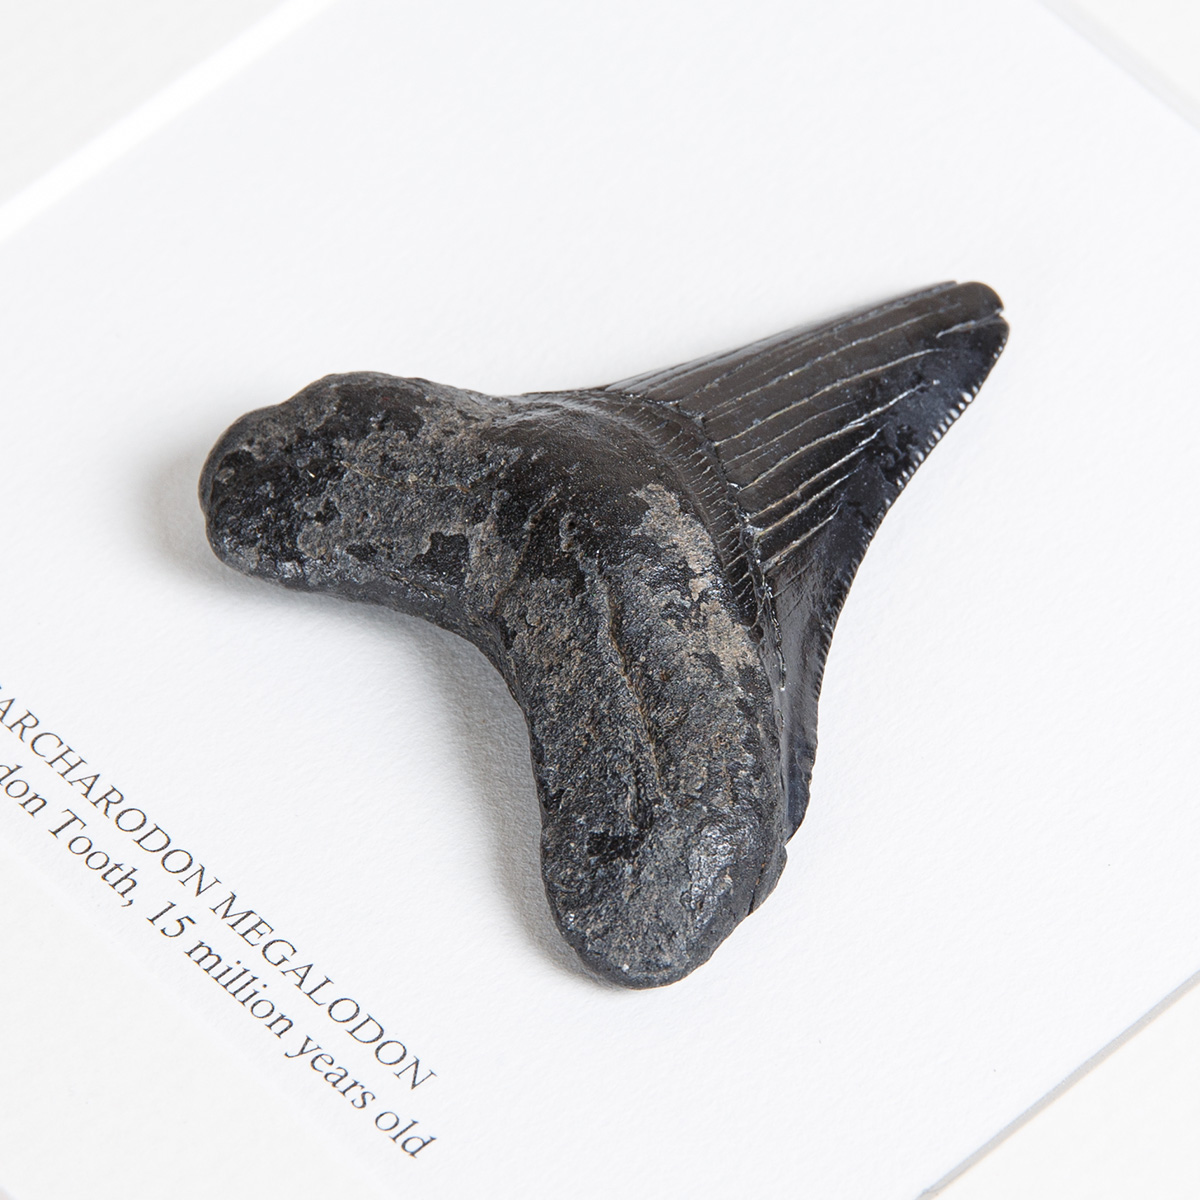 Medium Black Megalodon Shark Tooth (Carcharodon megalodon) Fossil in Box Frame